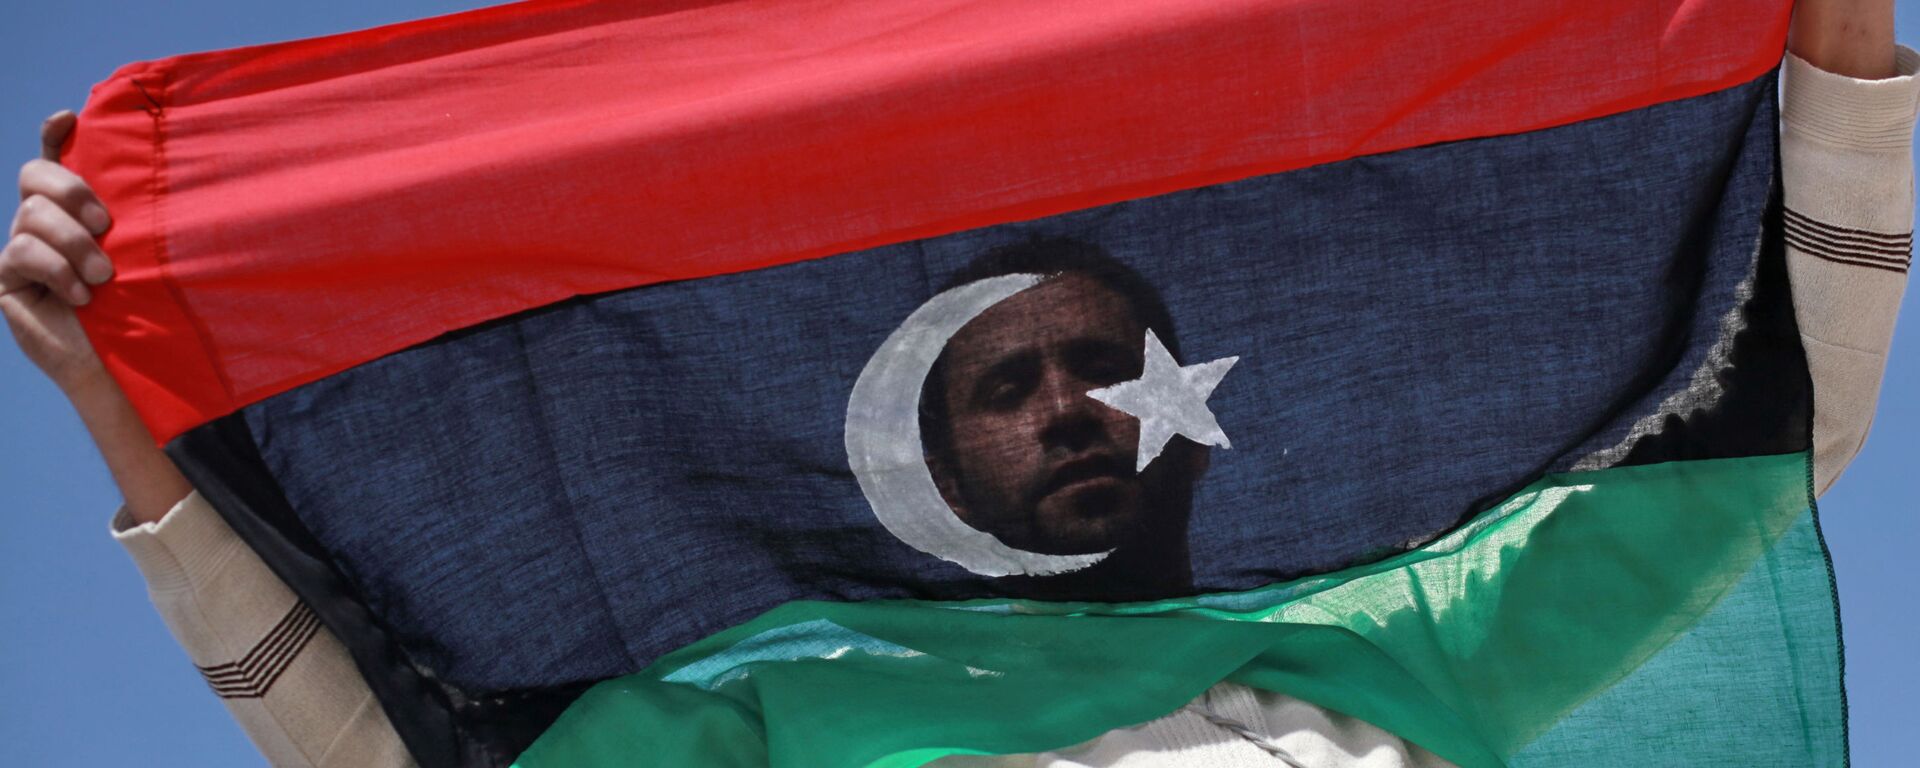 Un habitant de Benghazi avec un drapeau libyen - Sputnik Afrique, 1920, 13.11.2021